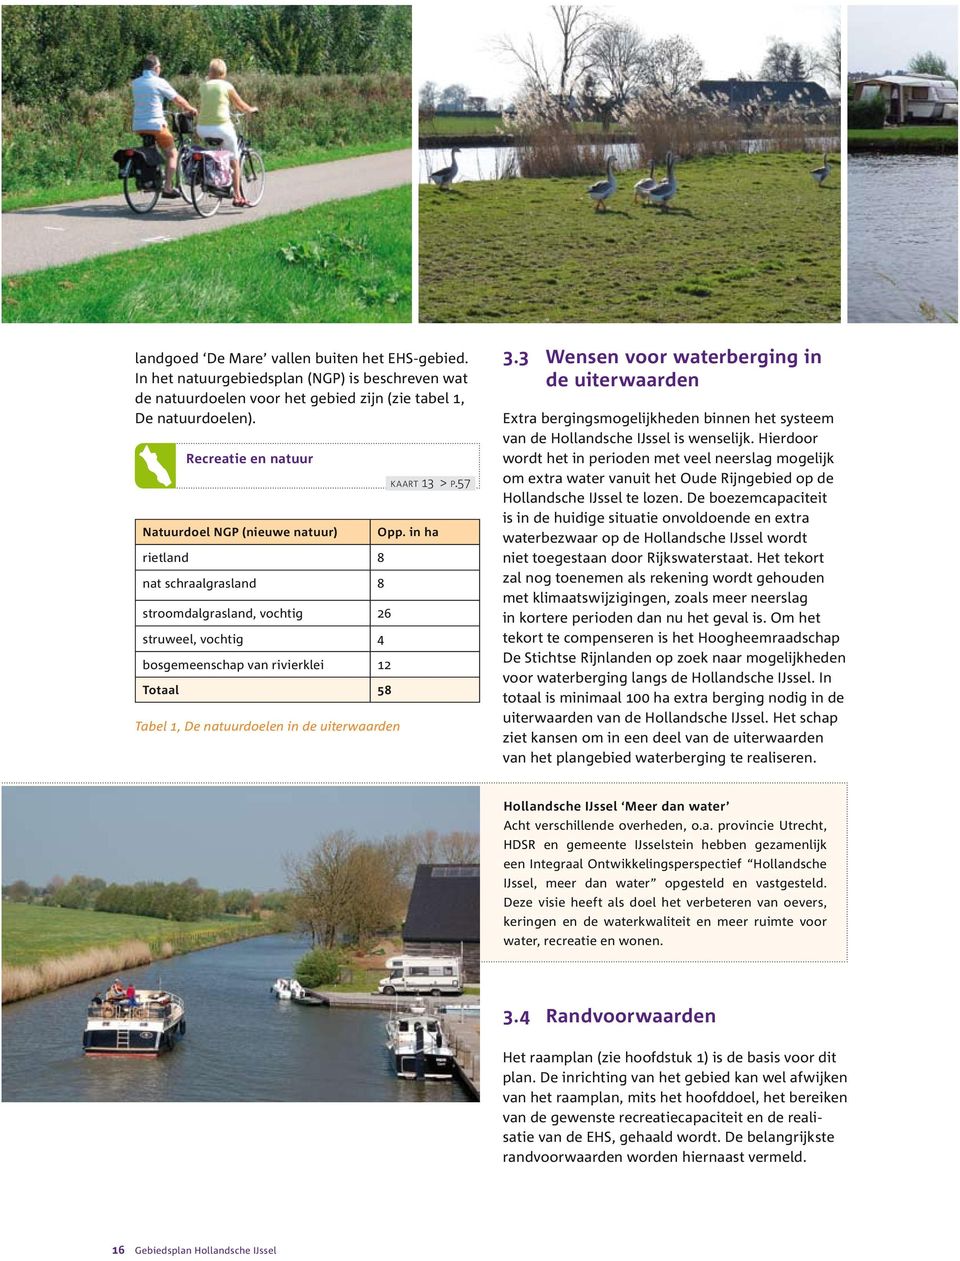 natuurdoelen in de uiterwaarden k a a r t 13 > p.57 Opp. in ha 3.3 Wensen voor waterberging in de uiterwaarden Extra bergingsmogelijkheden binnen het systeem van de Hollandsche IJssel is wenselijk.